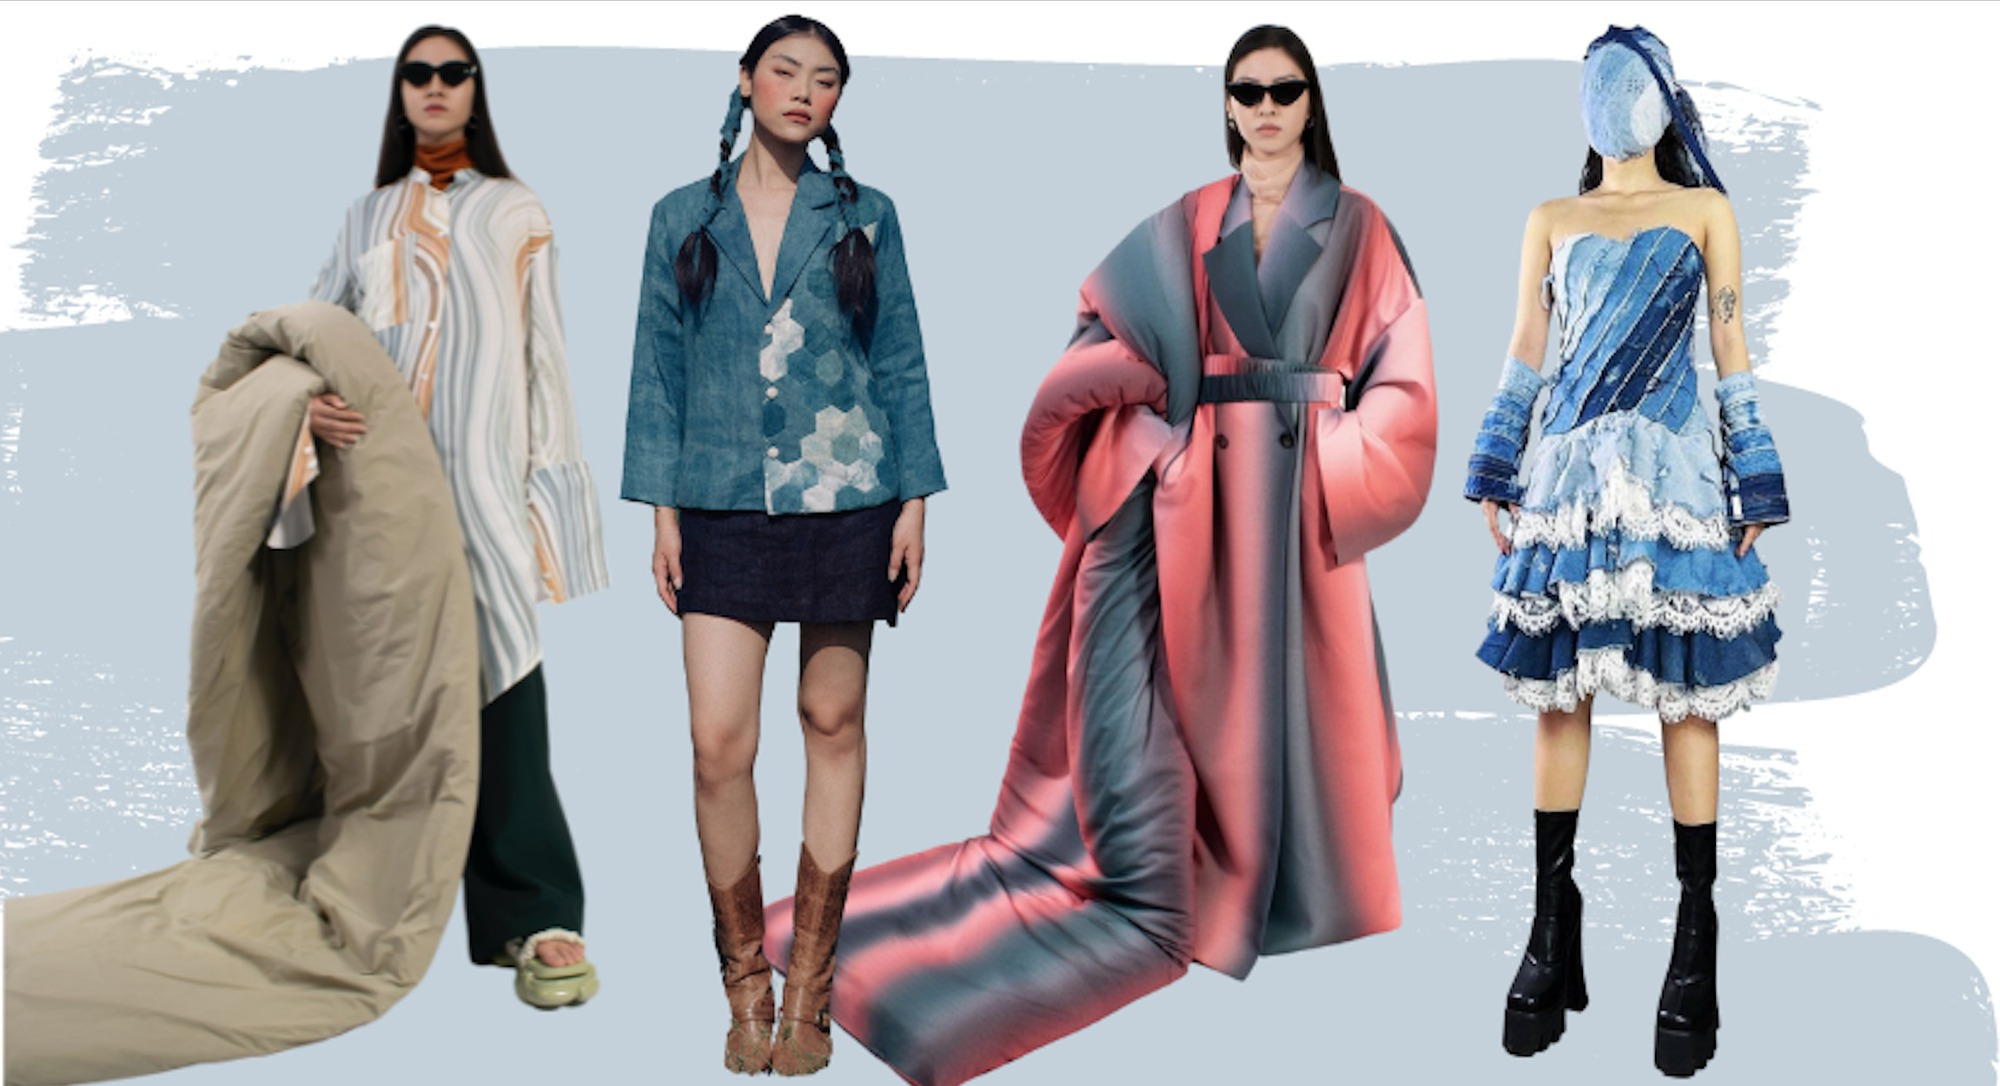 GenZ khai mở cuộc cách mạng về xu hướng thời trang bền vững - Ảnh 8.